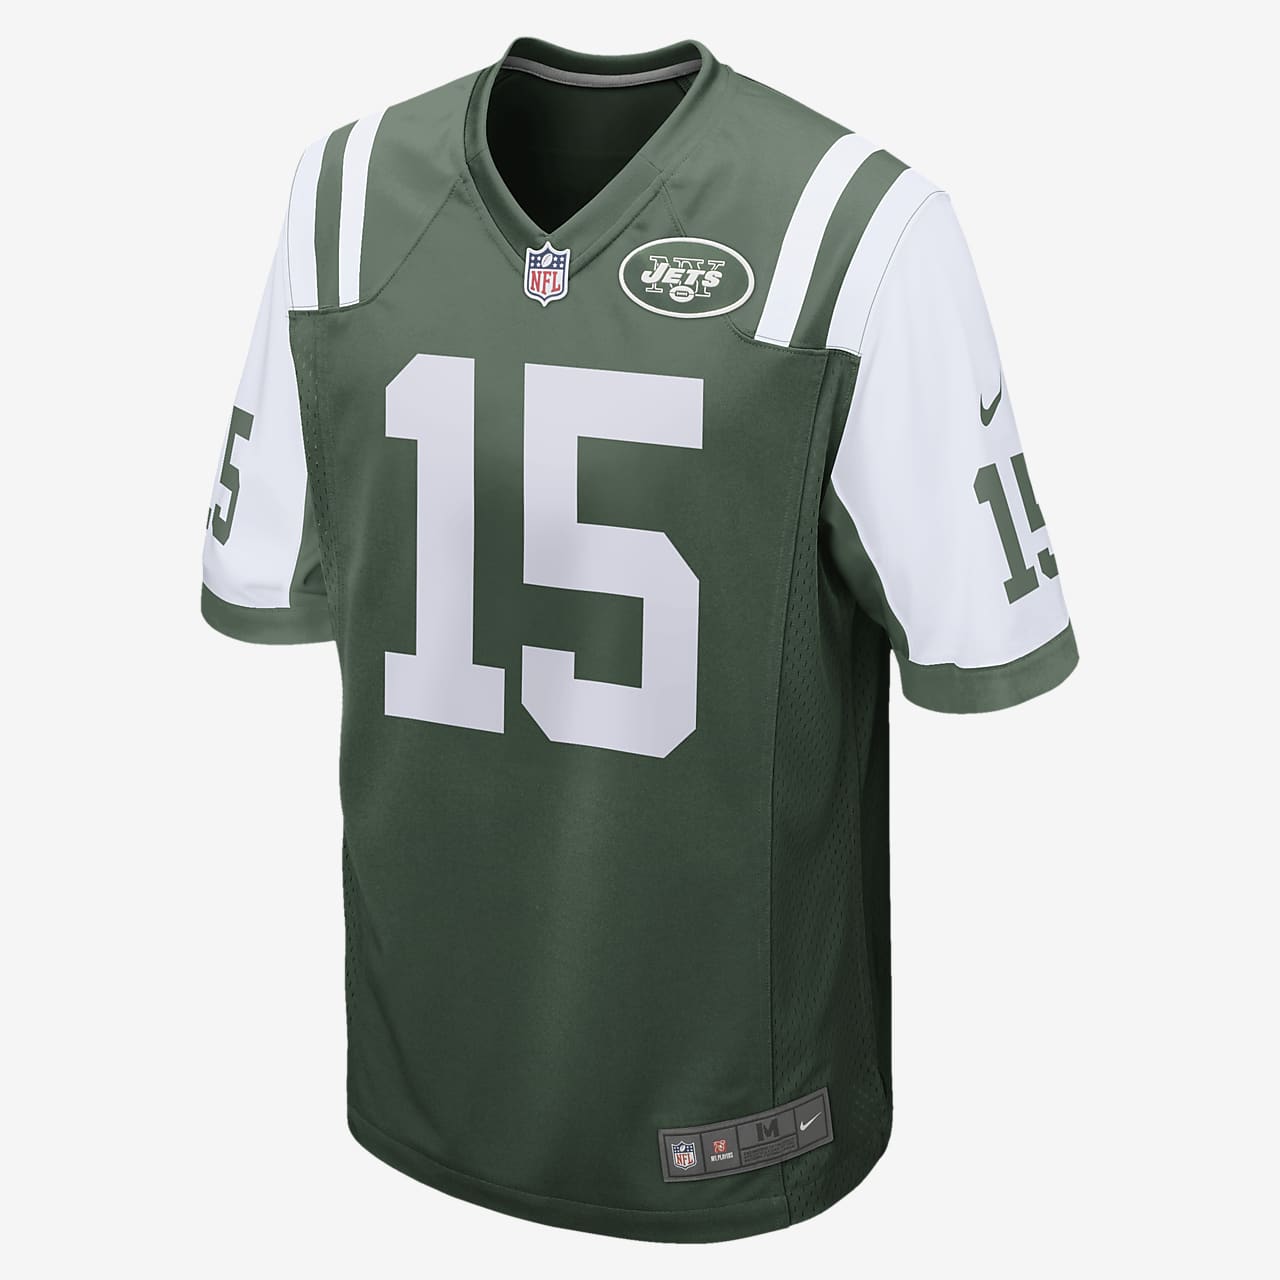 Pánský fotbalový dres NFL New York Jets (Brandon Marshall)